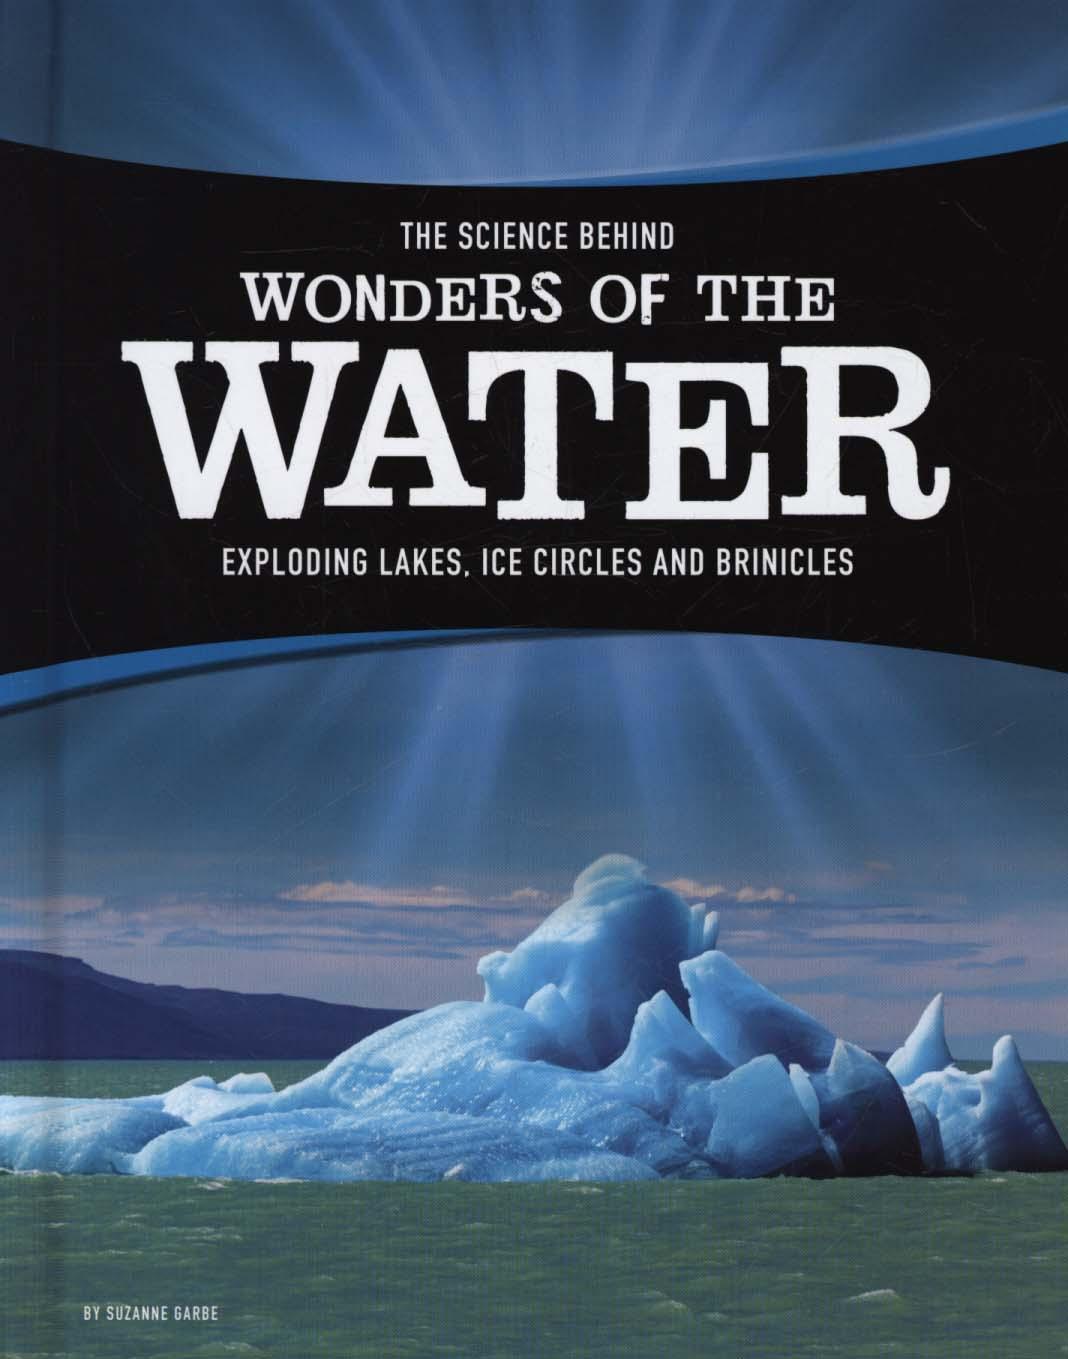 Science Behind Wonders of the Water